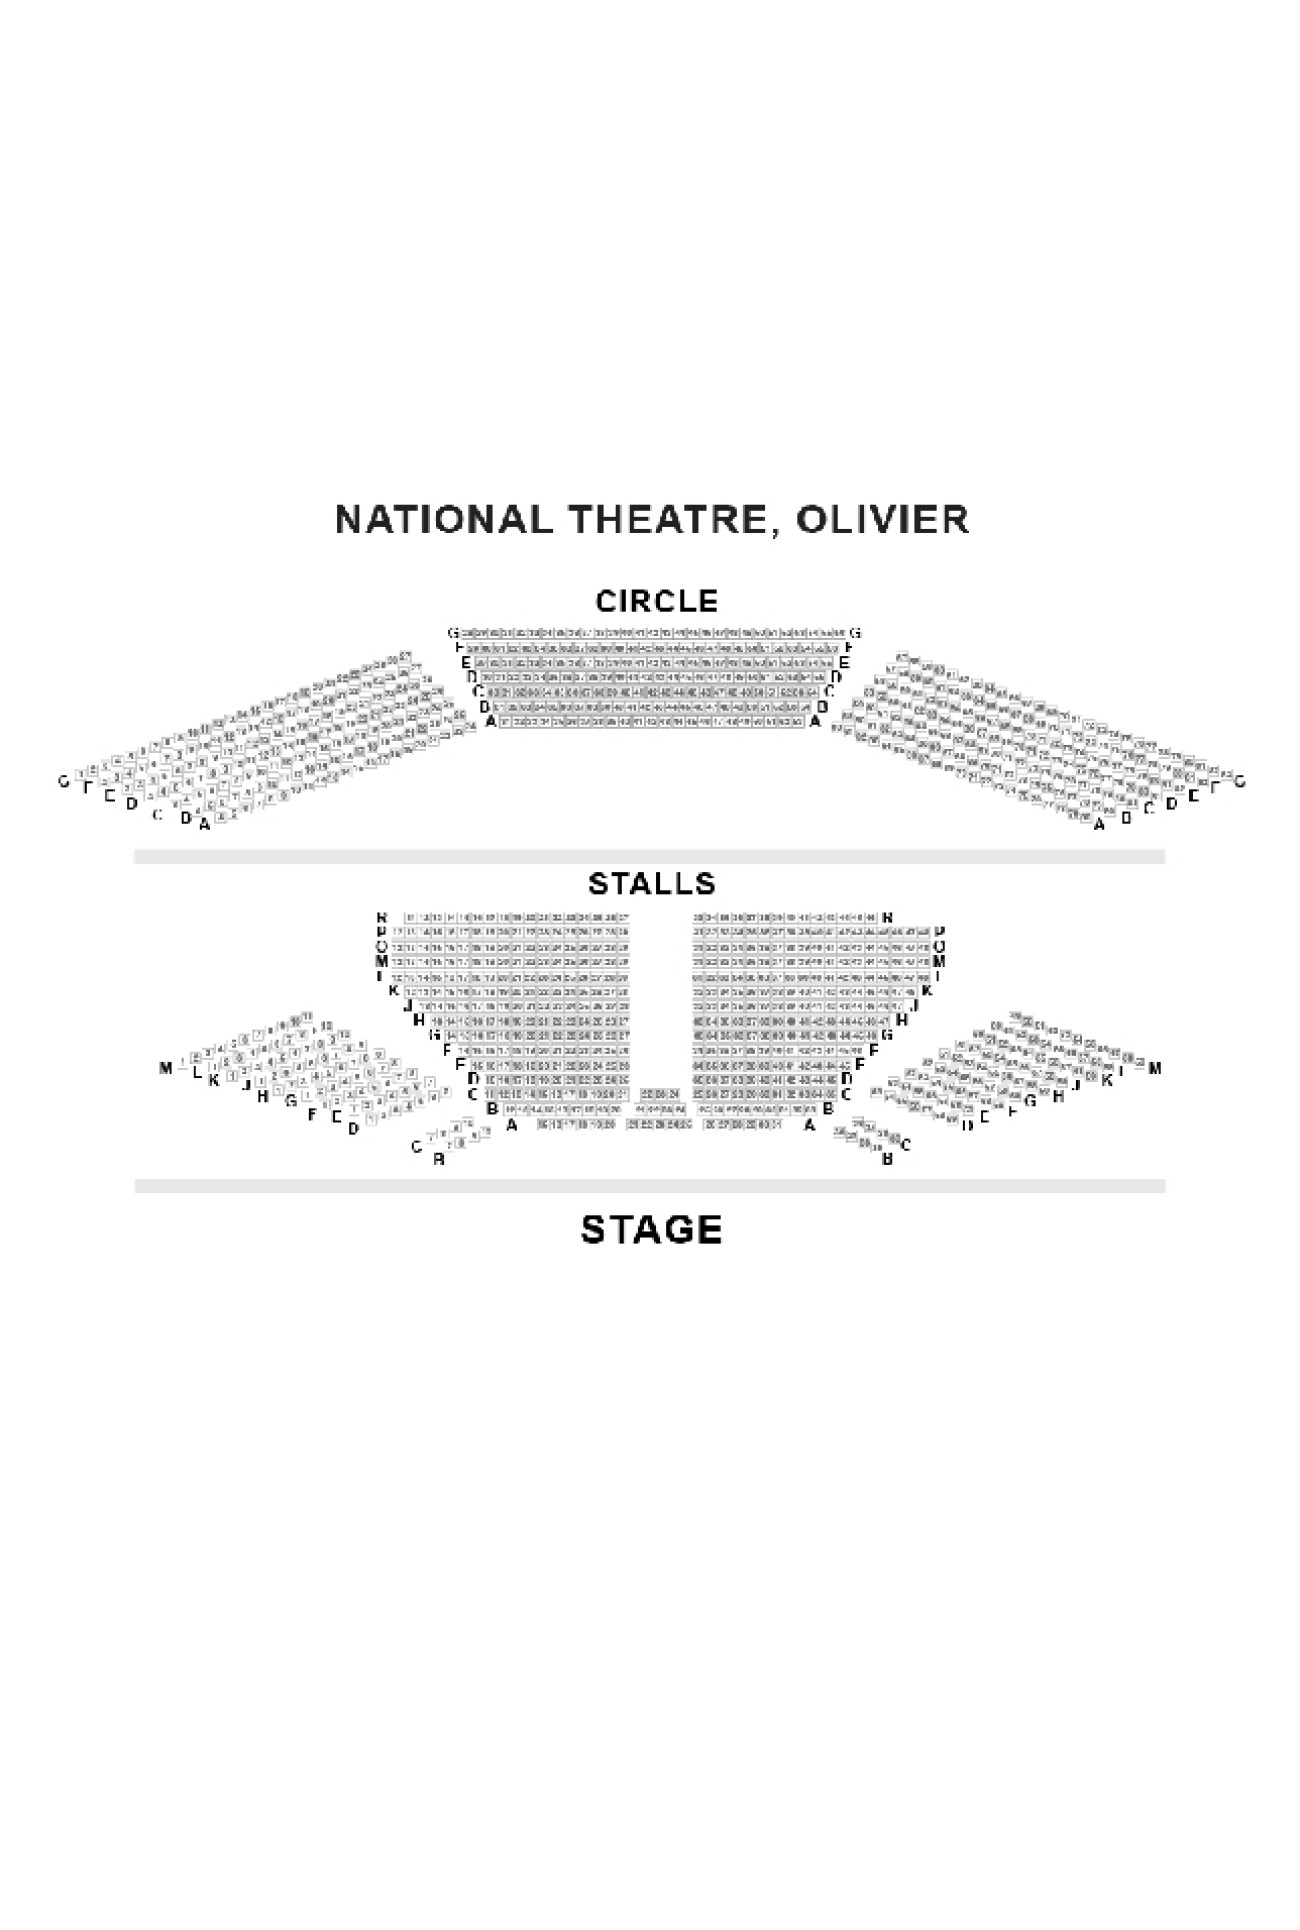 Olivier Theatre (National Theatre) Zaalplan